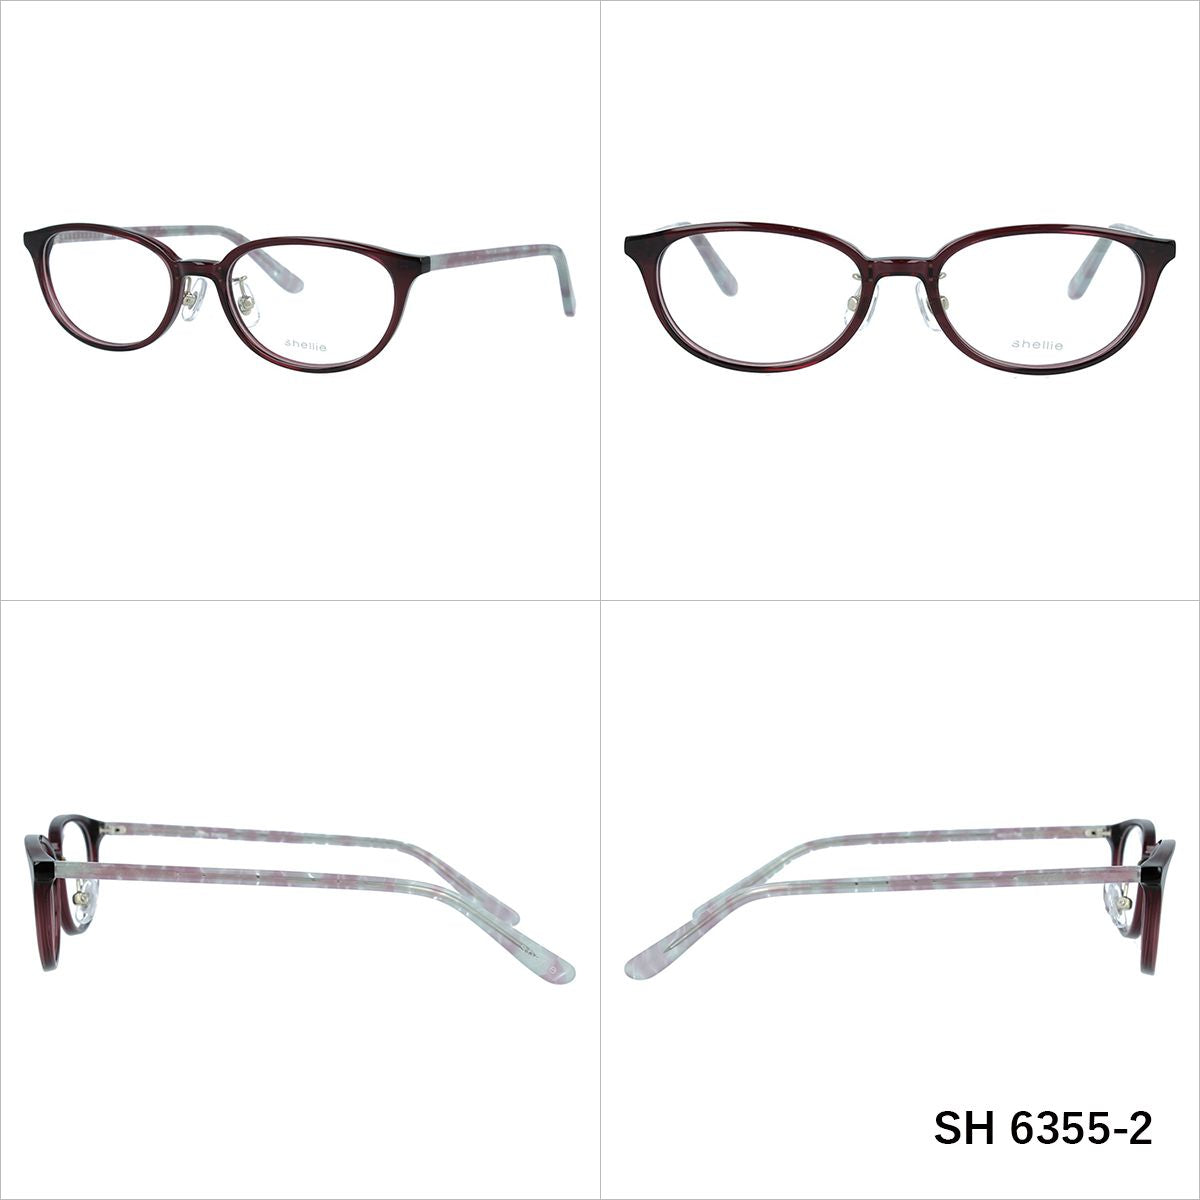 メガネ 眼鏡 おしゃれ shellie シェリー SH 6355 全2色 49サイズ オーバル型 レディース 女性 UVカット 紫外線 ブランド サングラス 伊達 ダテラッピング無料